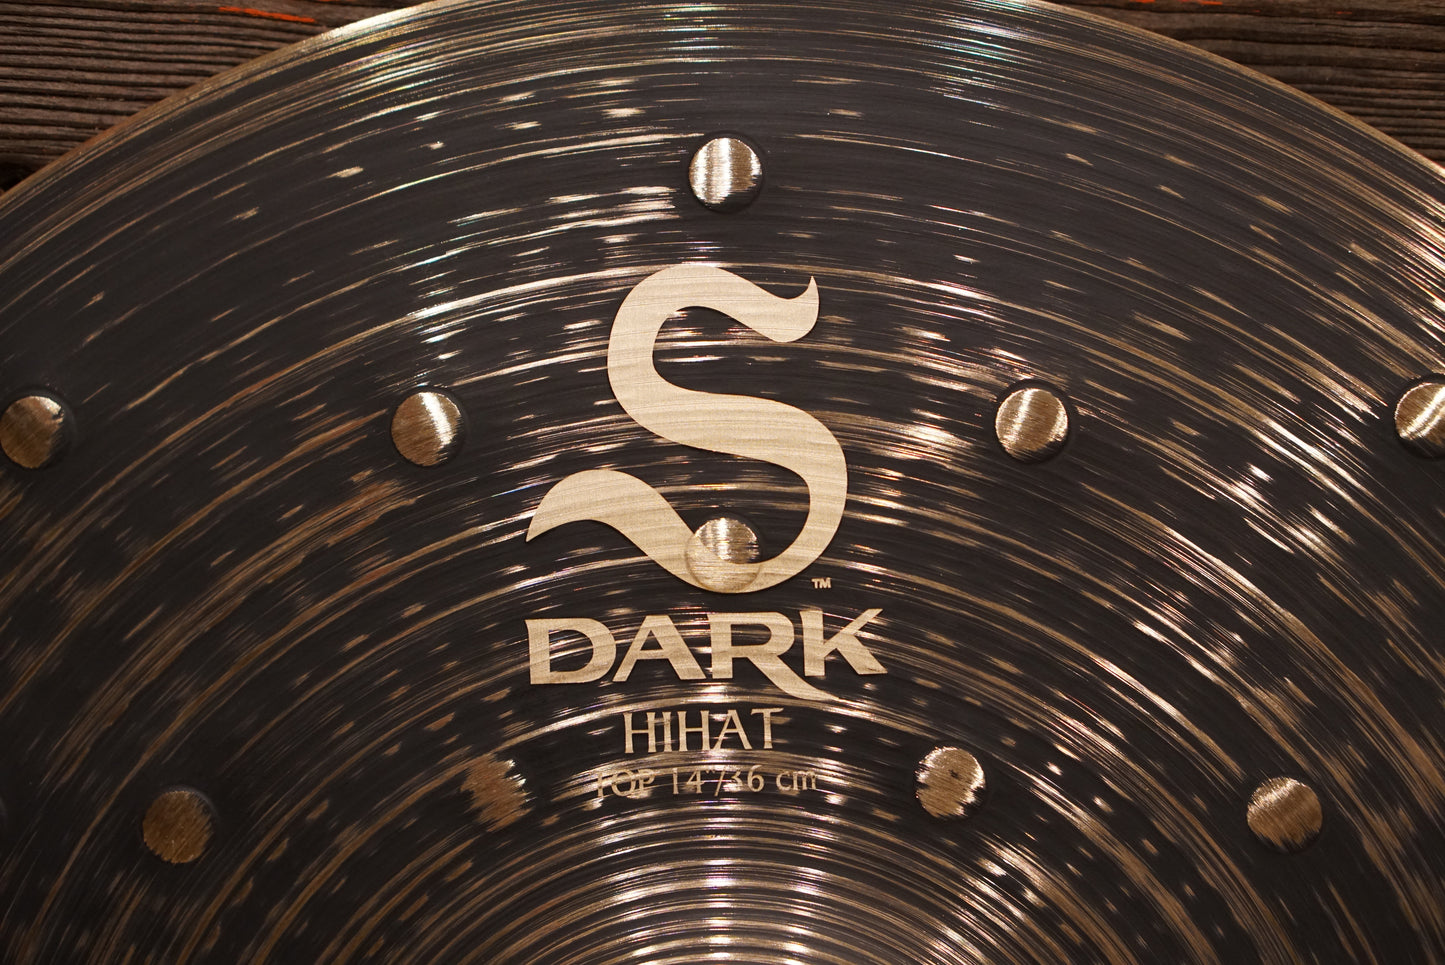 Zildjian 14" S Dark Hi-Hat Cymbals - 982/1330g